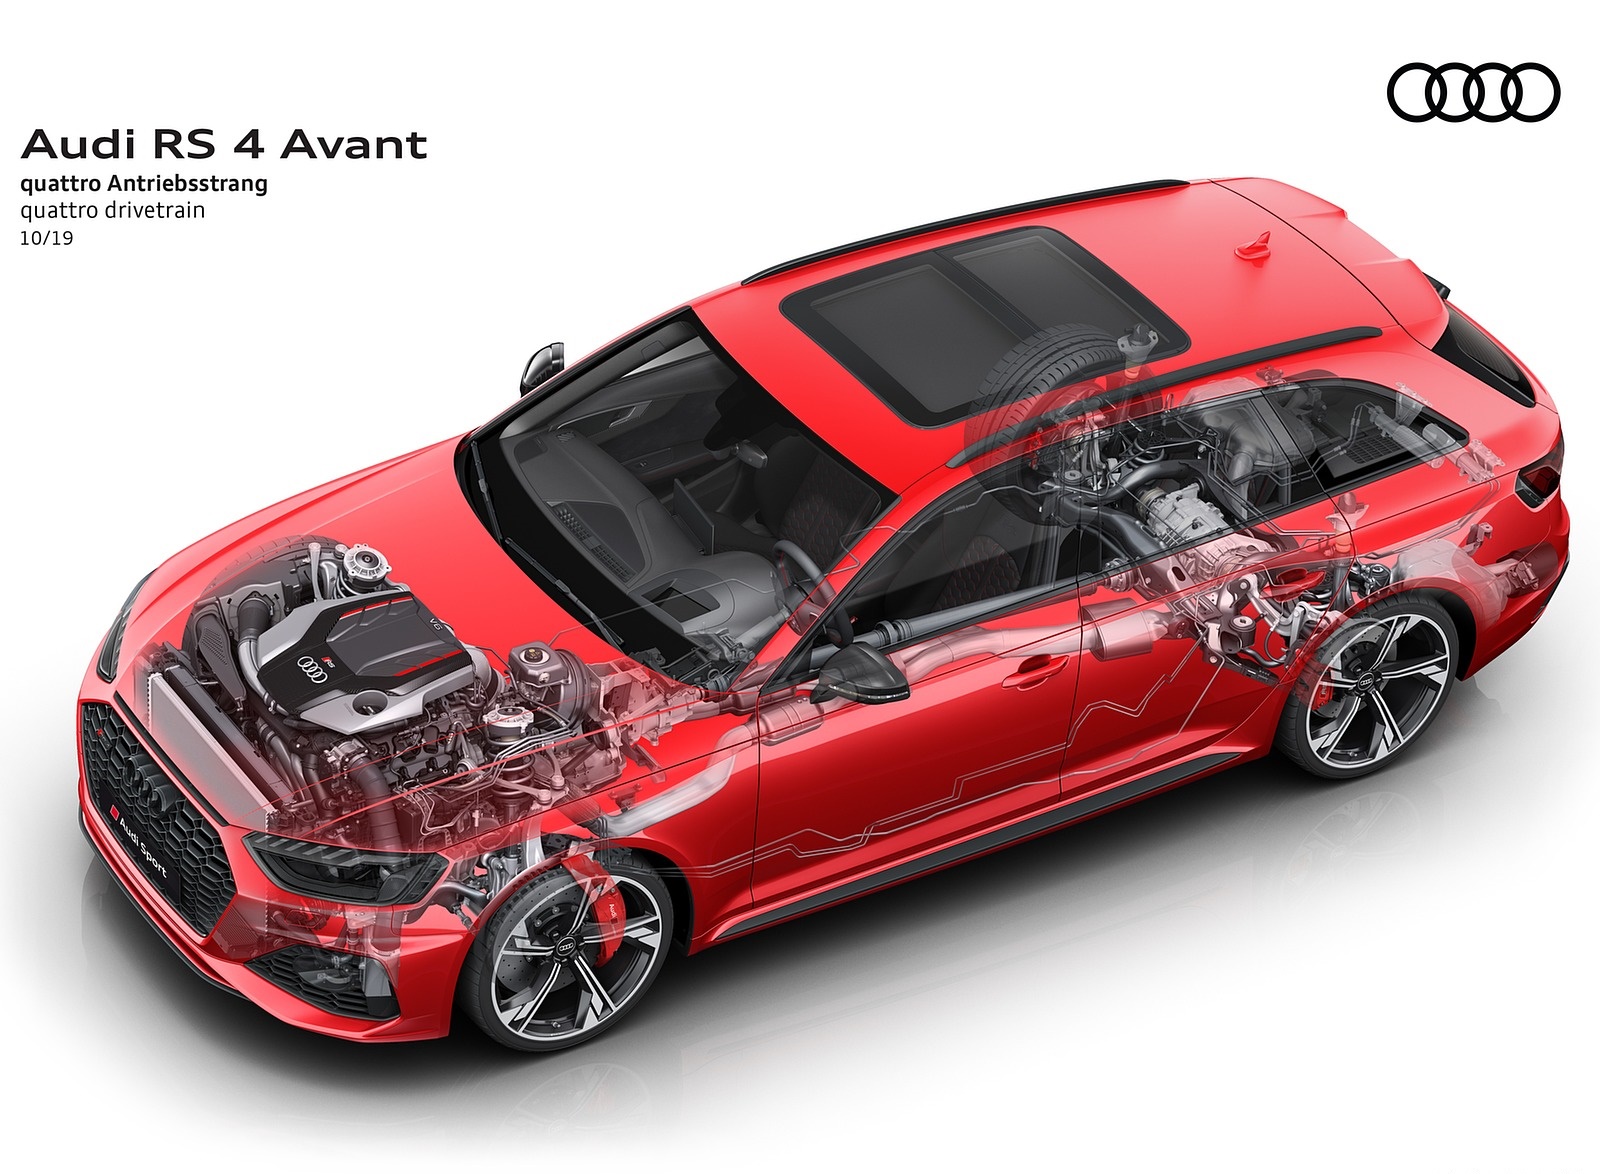 2020 Audi RS 4 Avant quattro drivetrain Wallpapers #90 of 98